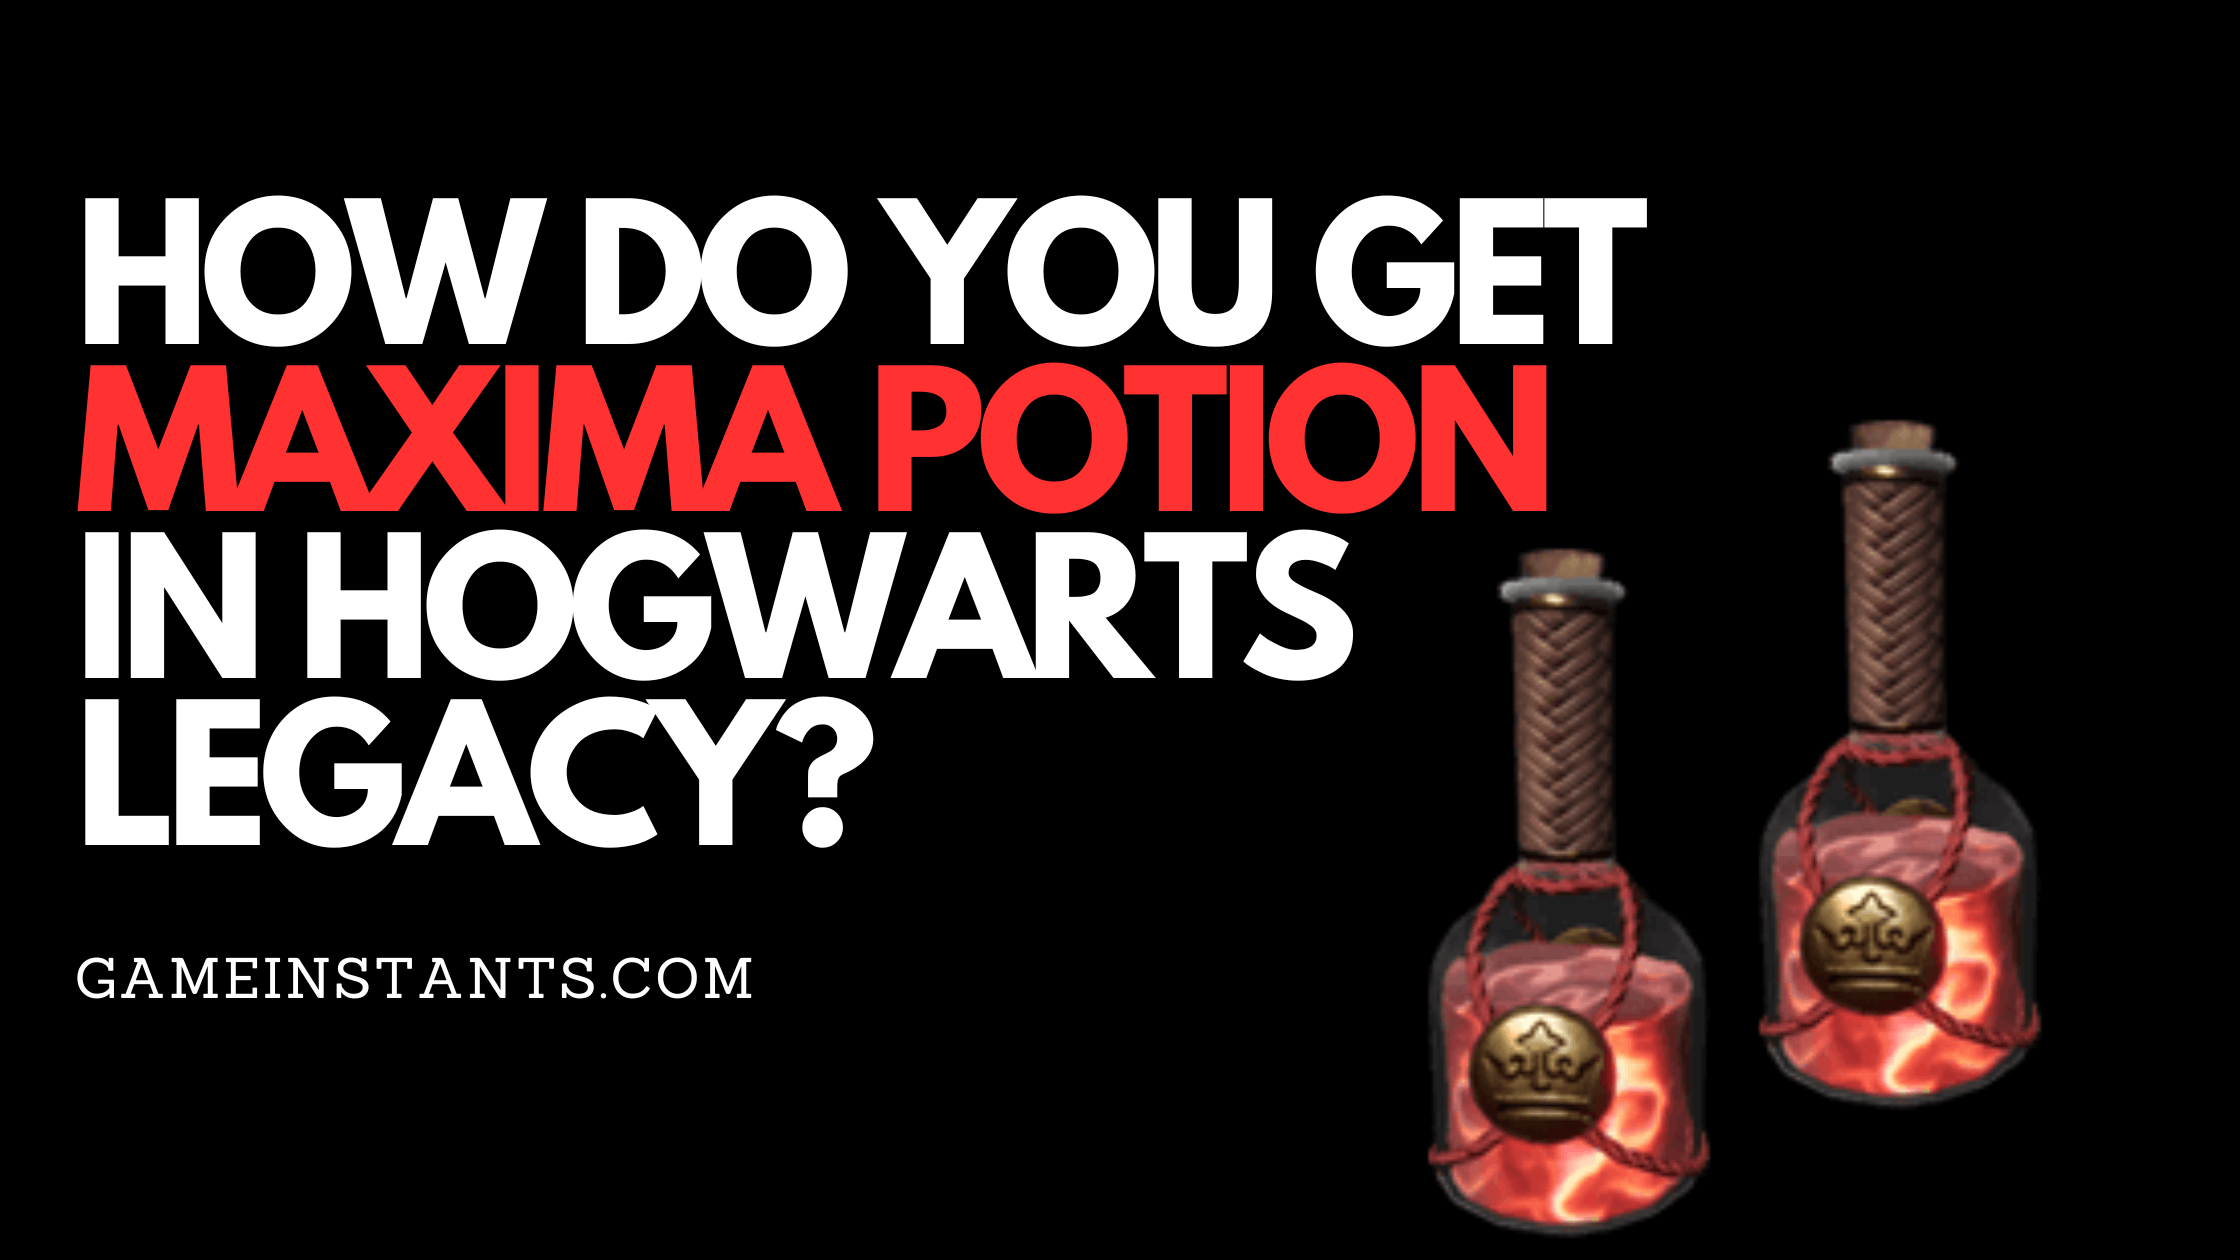 maxima potion recipe hogwarts legacy